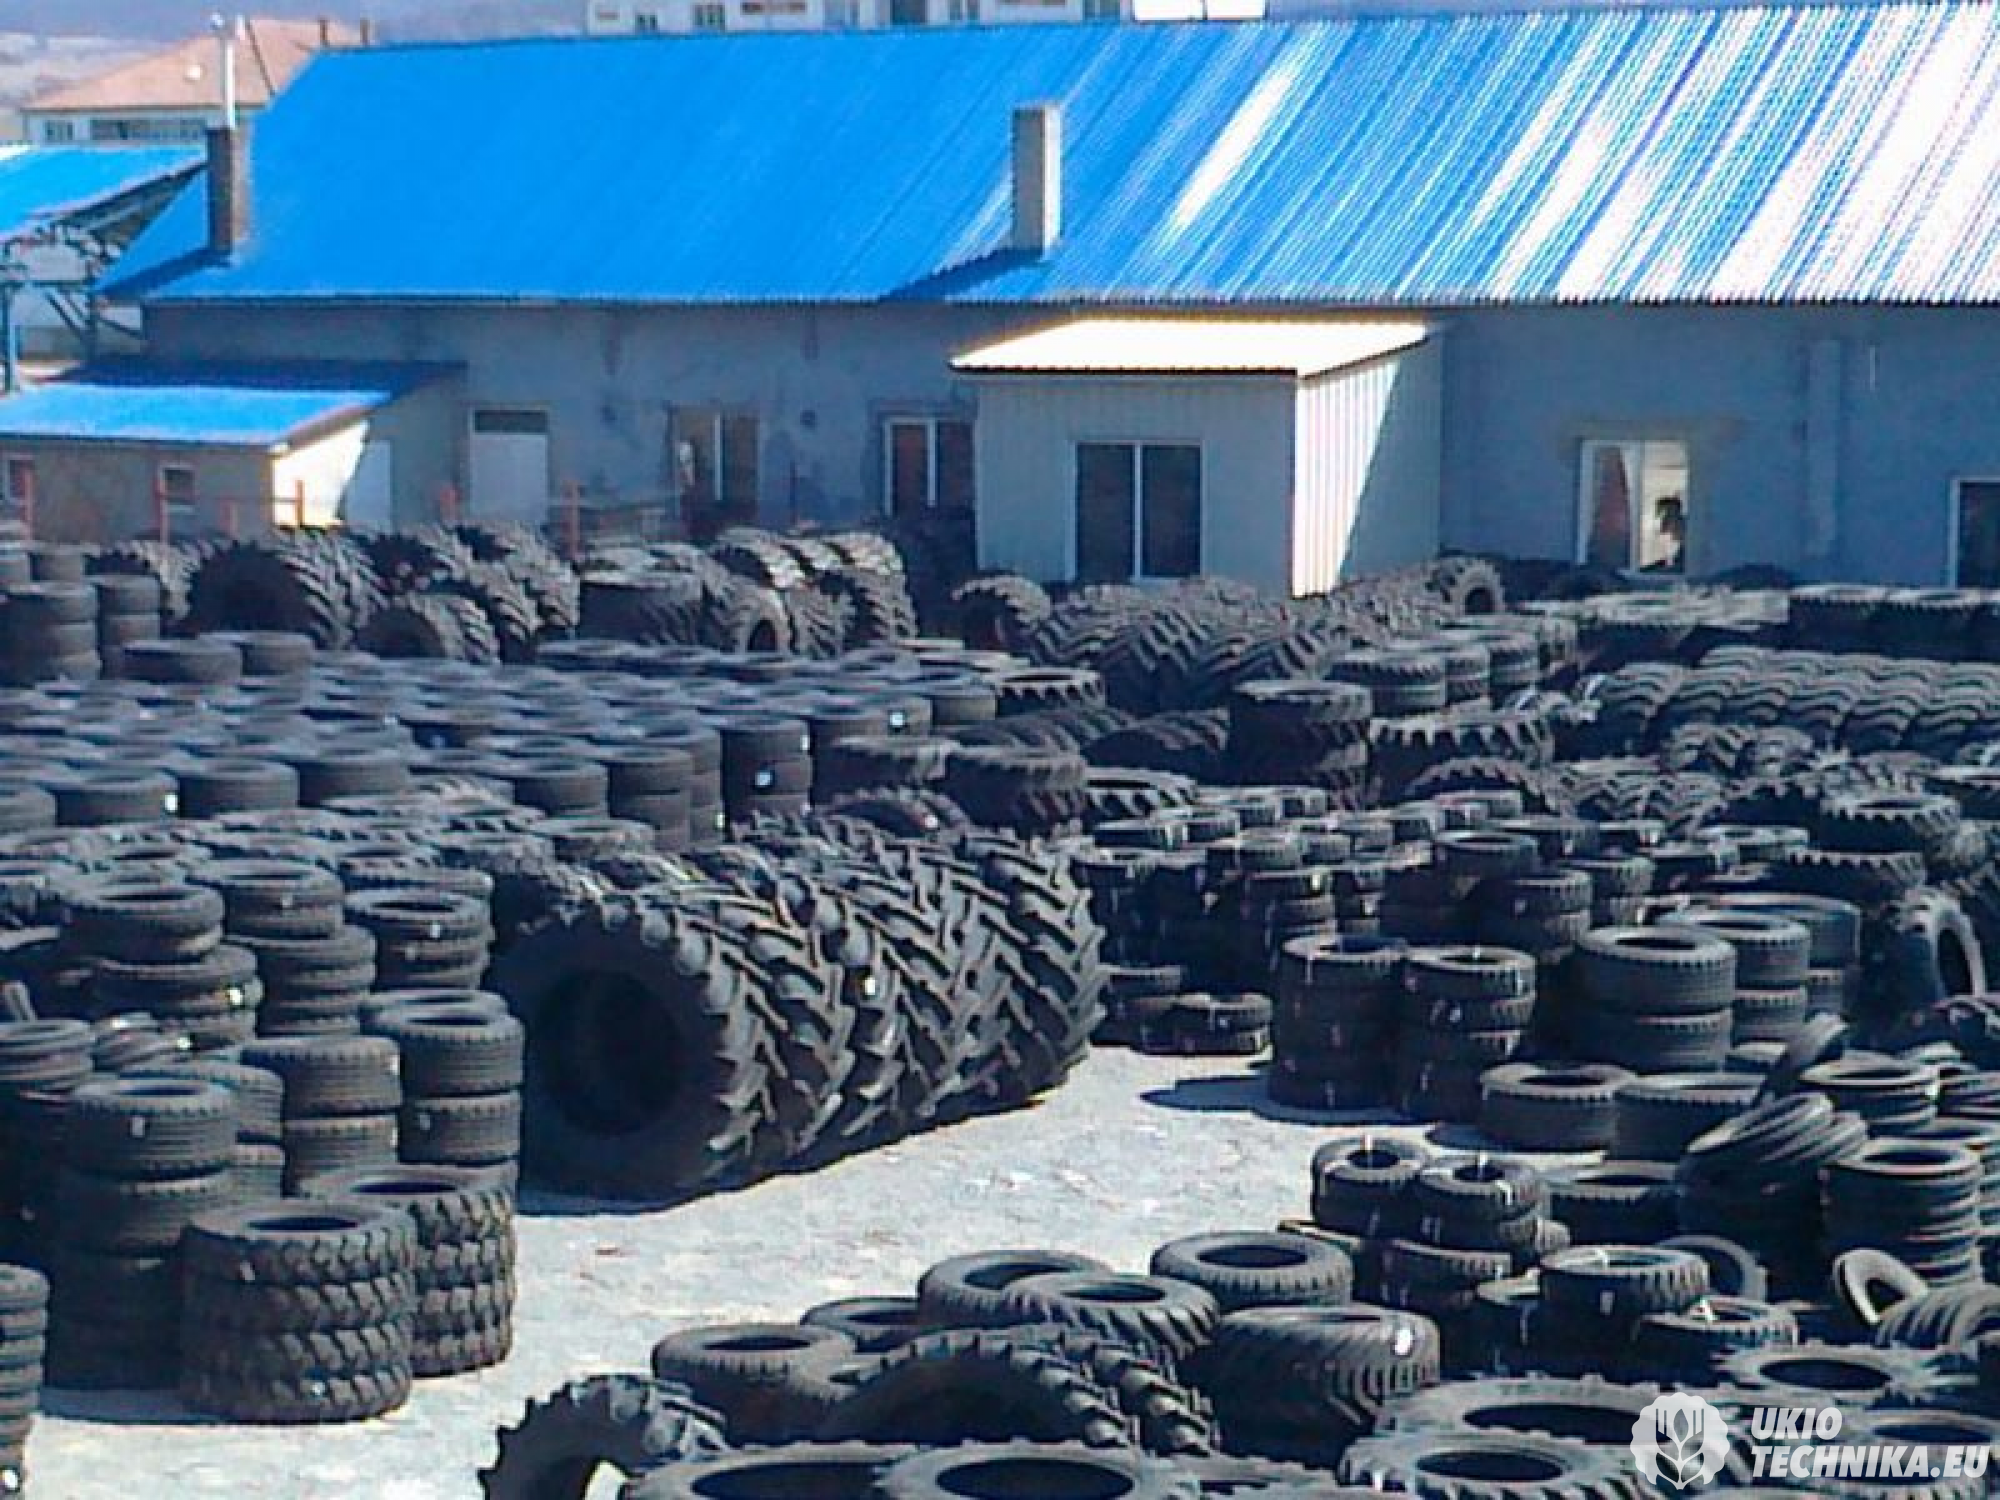 Купить шины в ростовской области